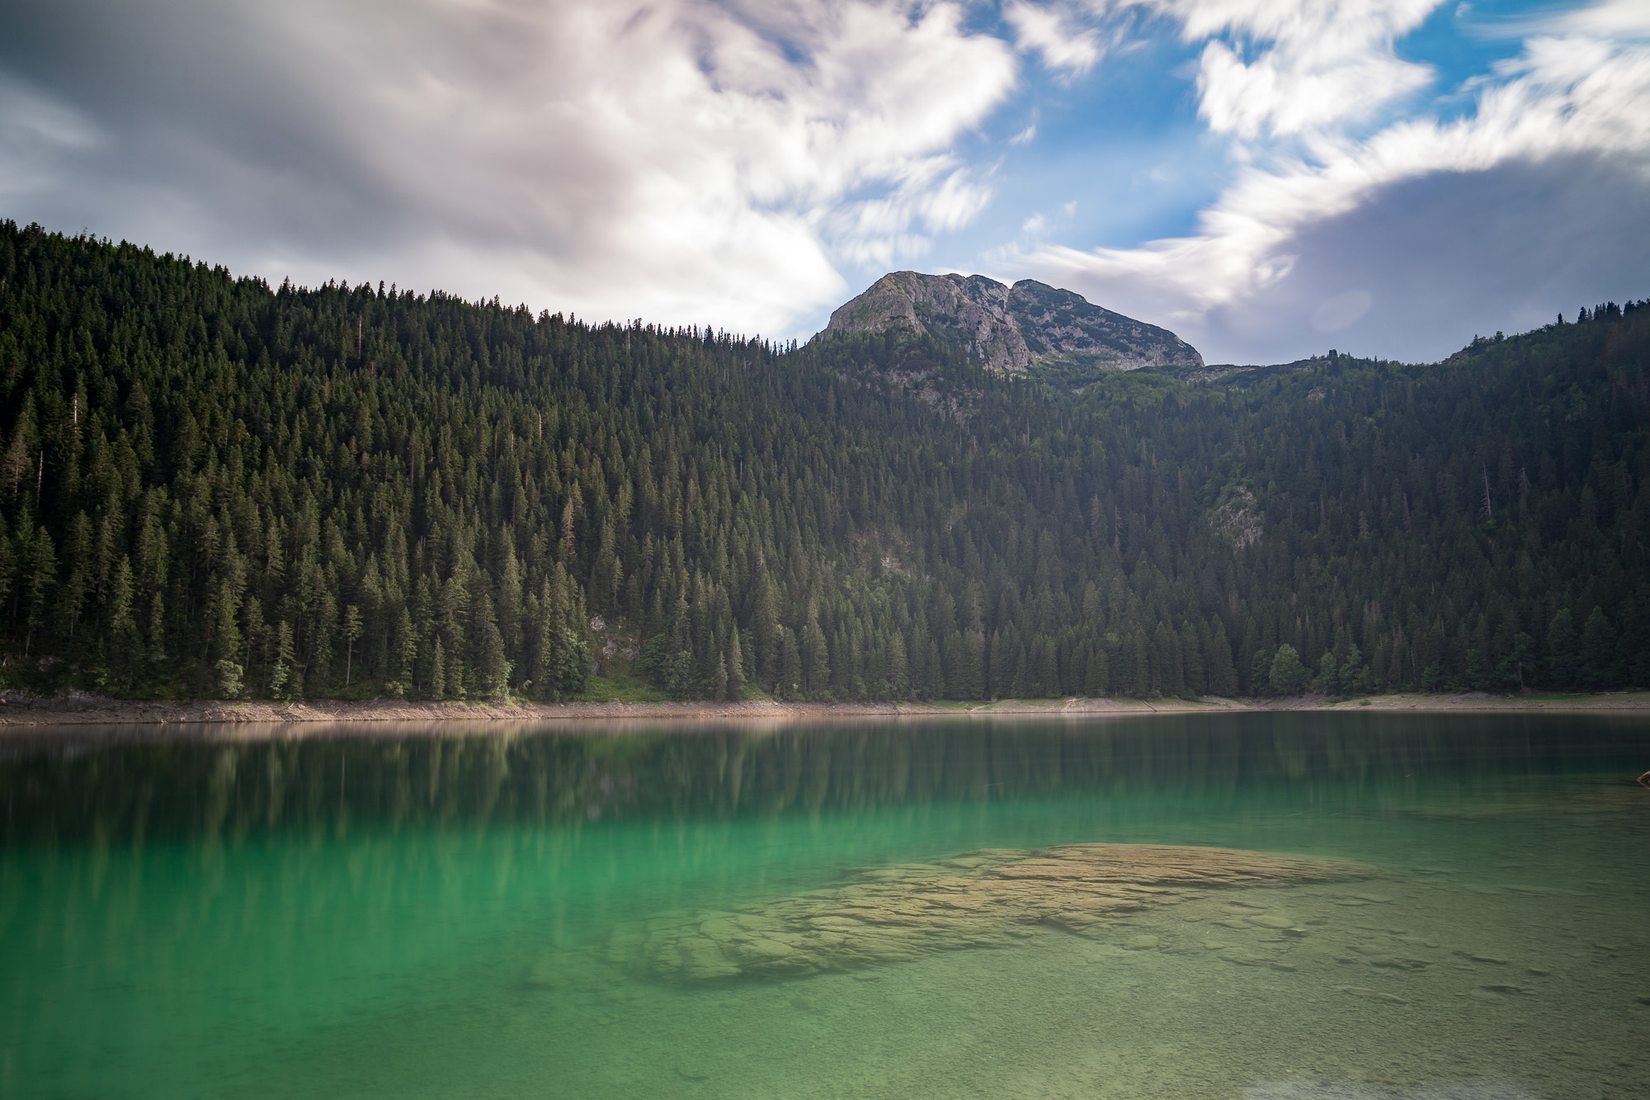 Послушать в озерах. Црно-езеро Черногория. Ливеровичи озеро Черногория. Змеиное озеро Черногория. Большая и малая шишка озеро Черногория.